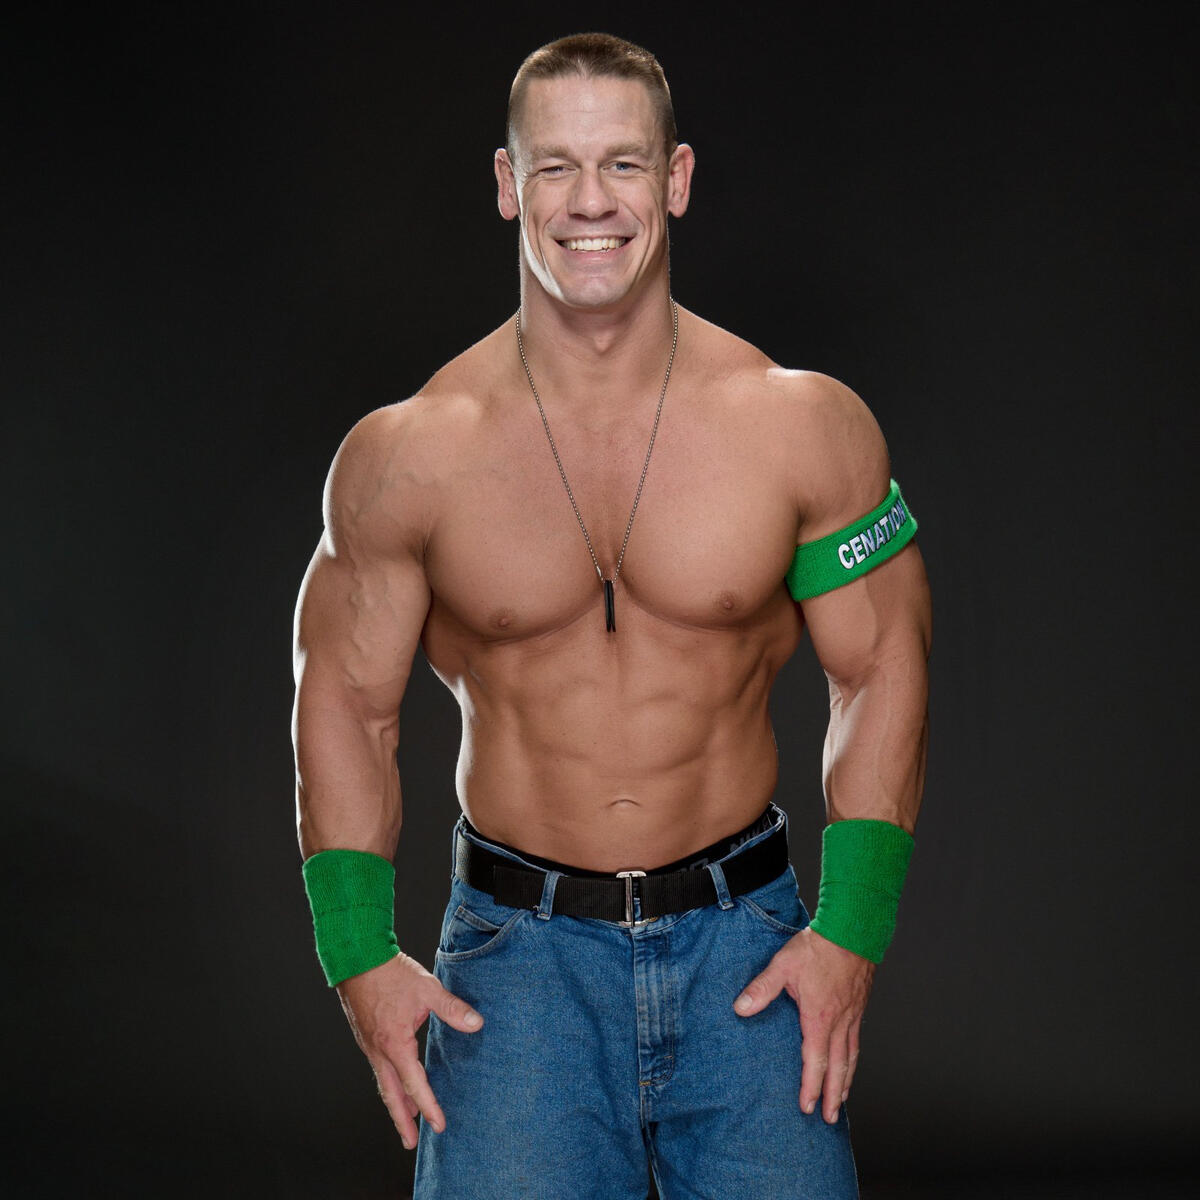 John Cena photo shoot outtakes: photos | WWE